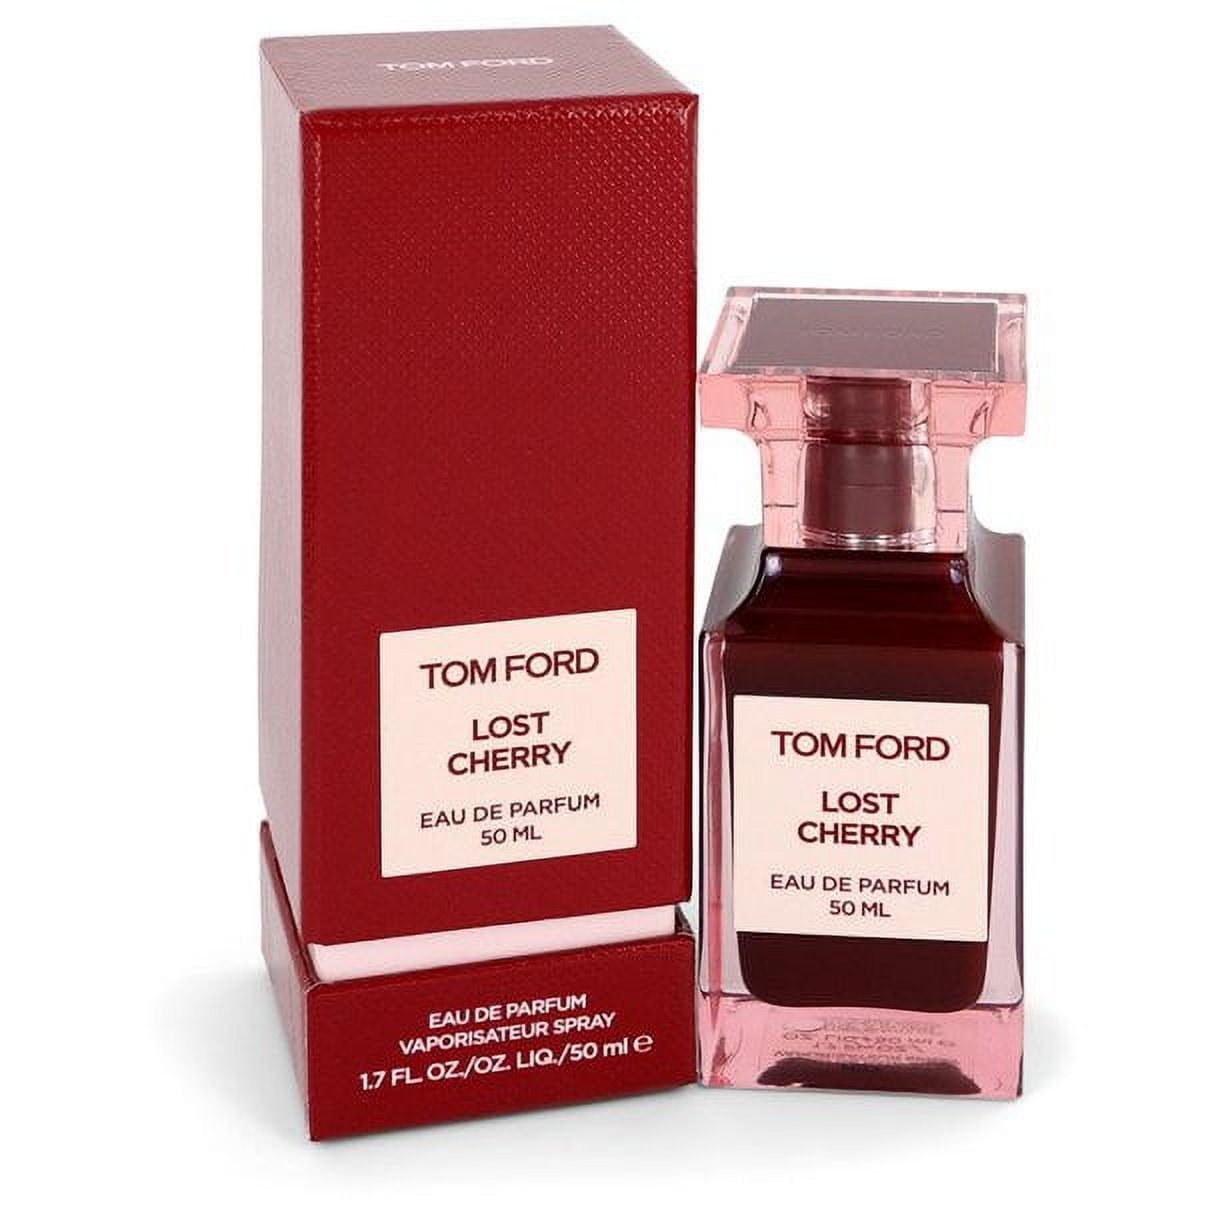 Tom Ford - Eau De Parfum Lost Cherry, One size, 50 ml 